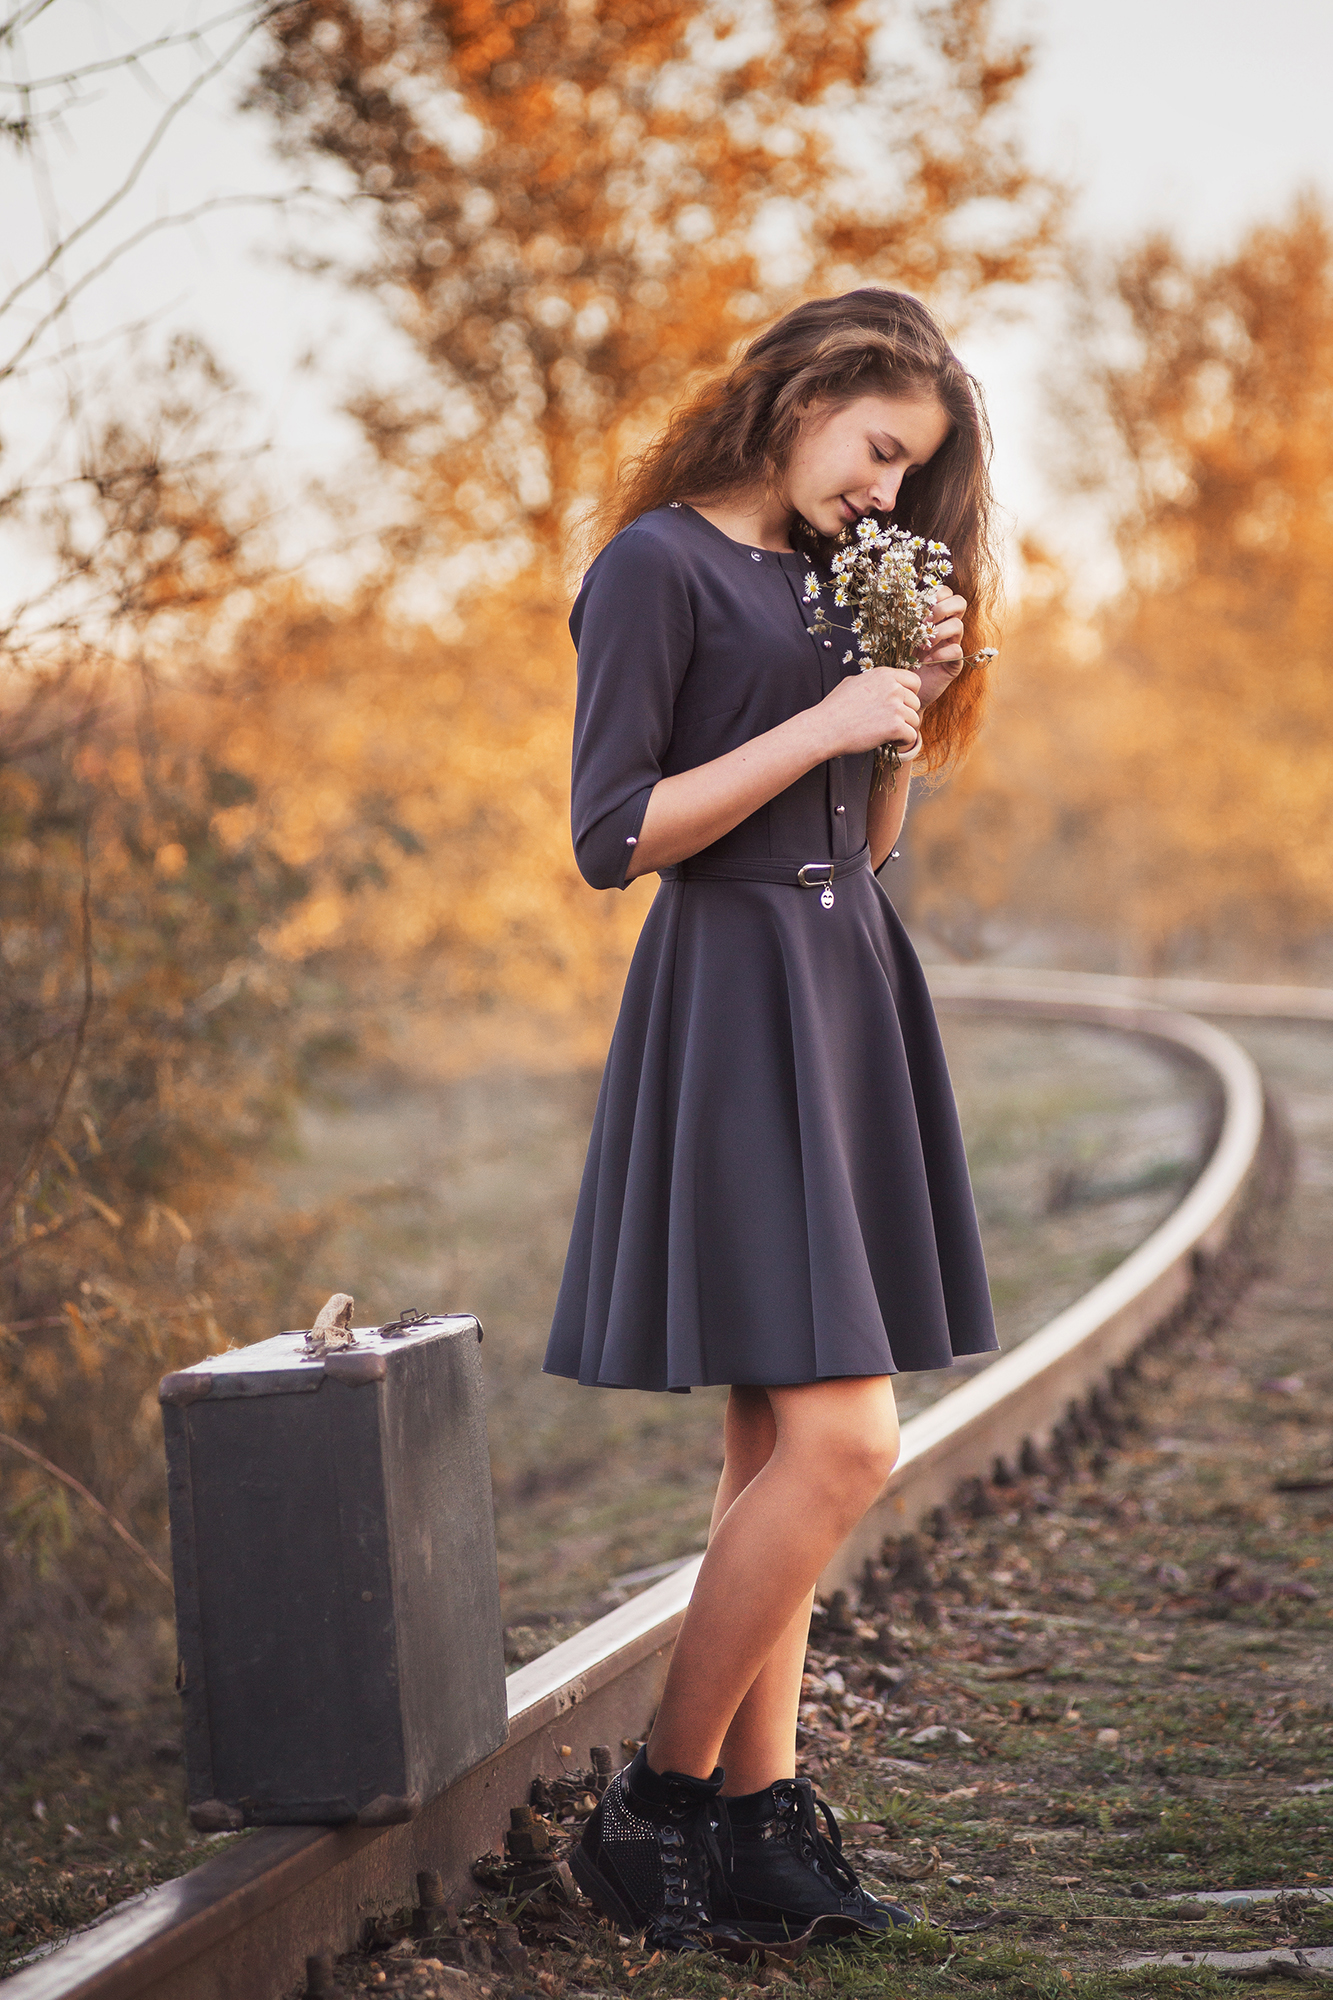 Фото Девушка с цветами в руках стоит на железной дороге рядом с чемоданом, фотограф Неволов Илья